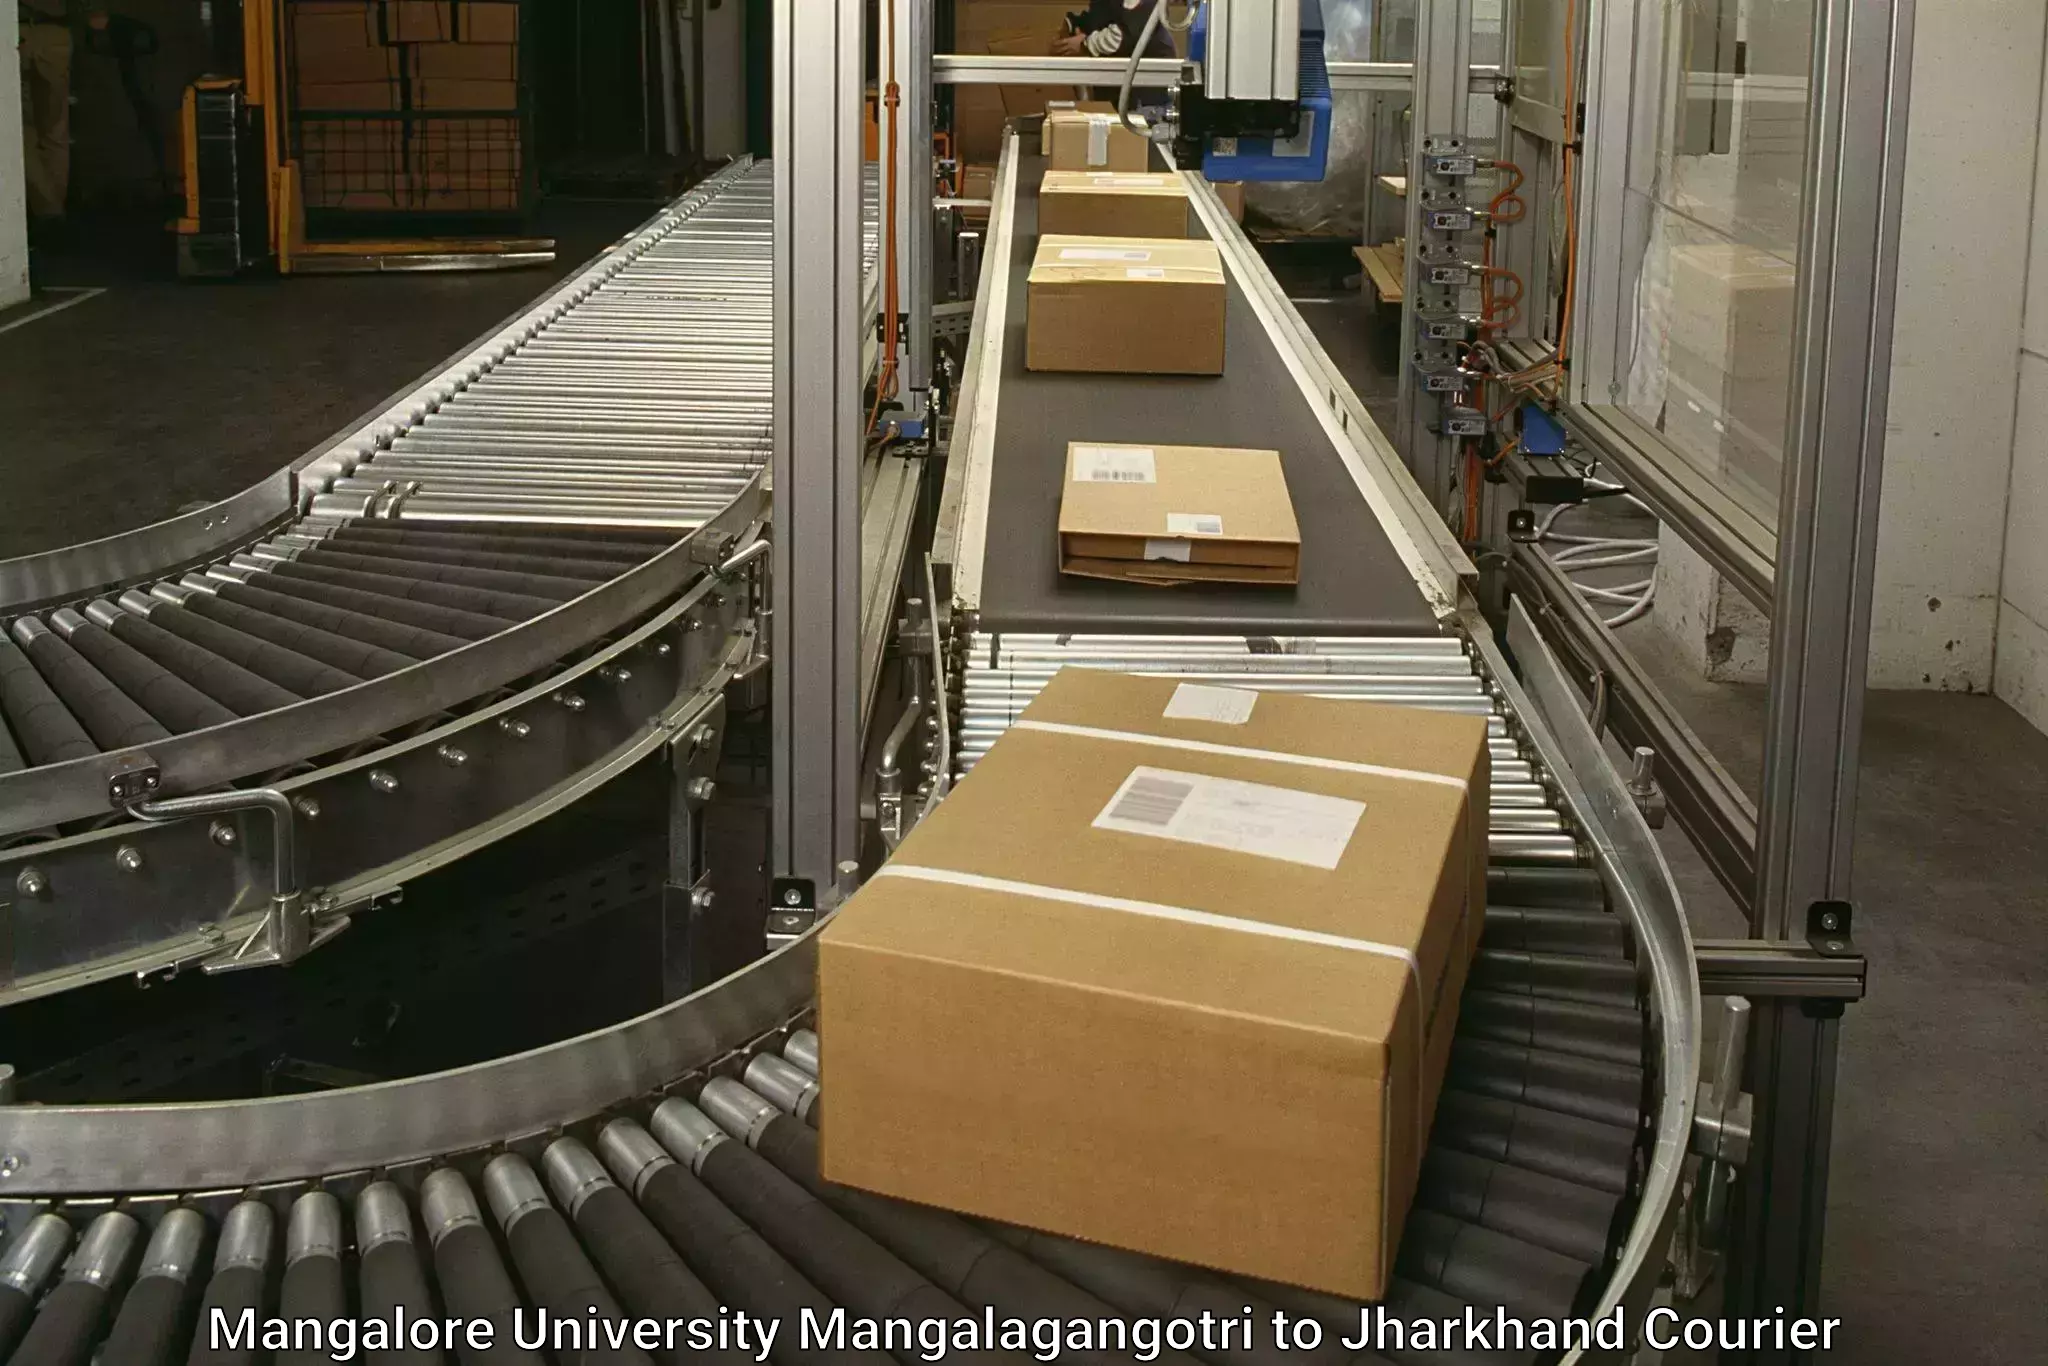 Reliable courier service Mangalore University Mangalagangotri to Tandwa